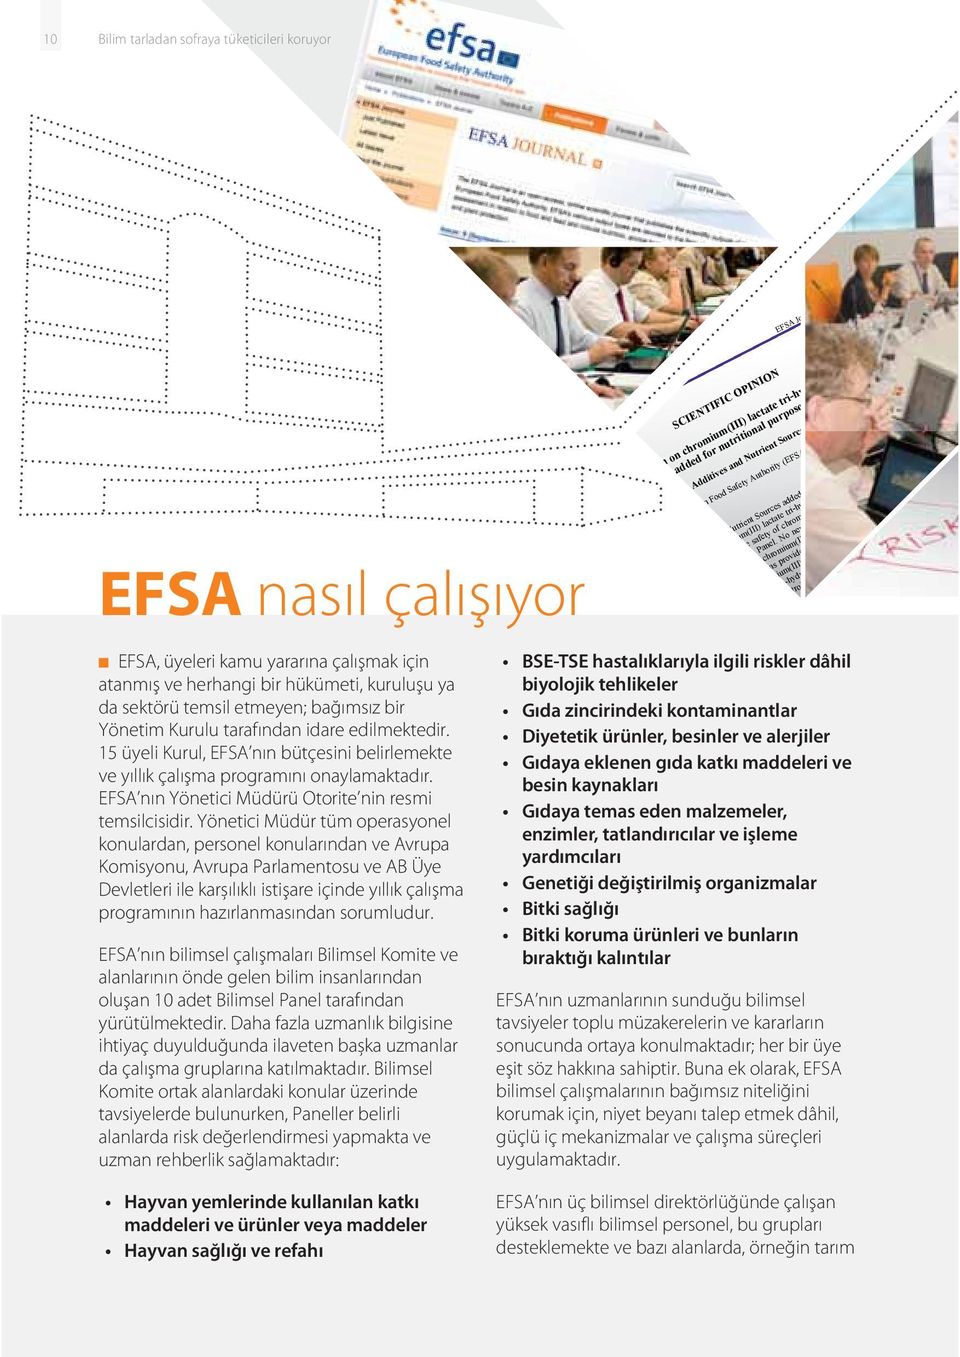 EFSA nın Yönetici Müdürü Otorite nin resmi temsilcisidir.